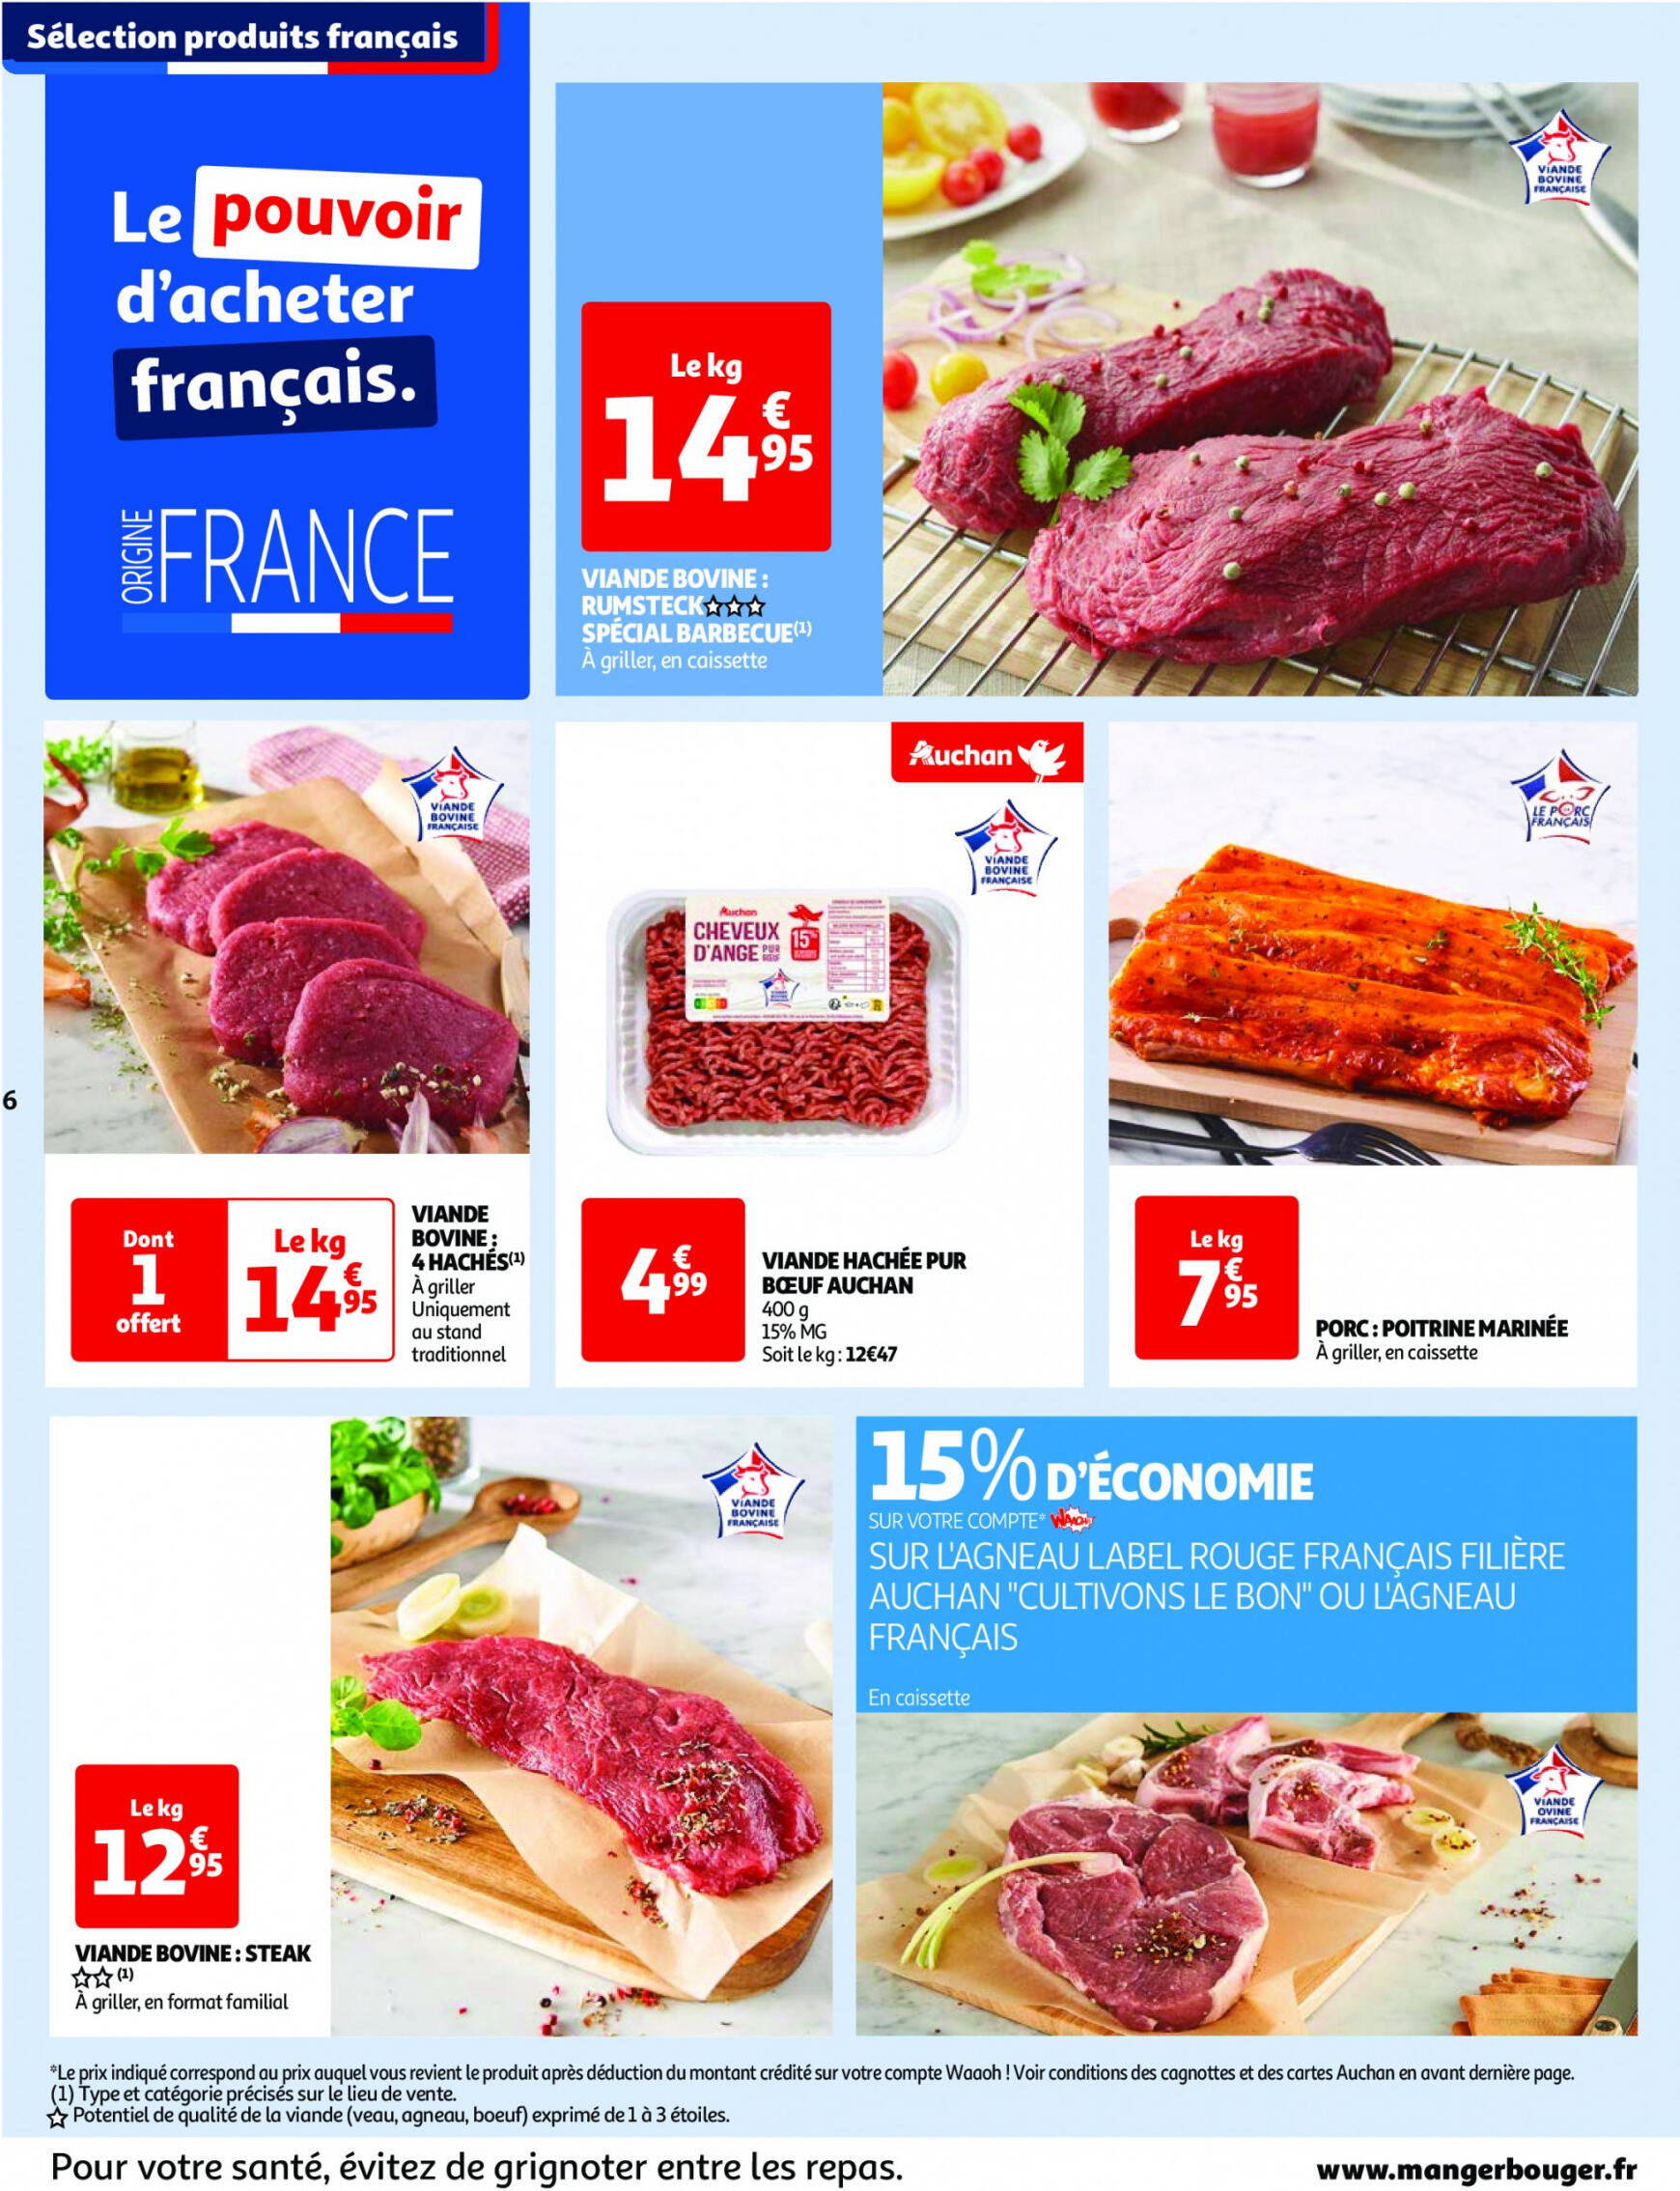 auchan - Auchan - Nos surgelés ont tout bon folder huidig 14.05. - 21.05. - page: 6